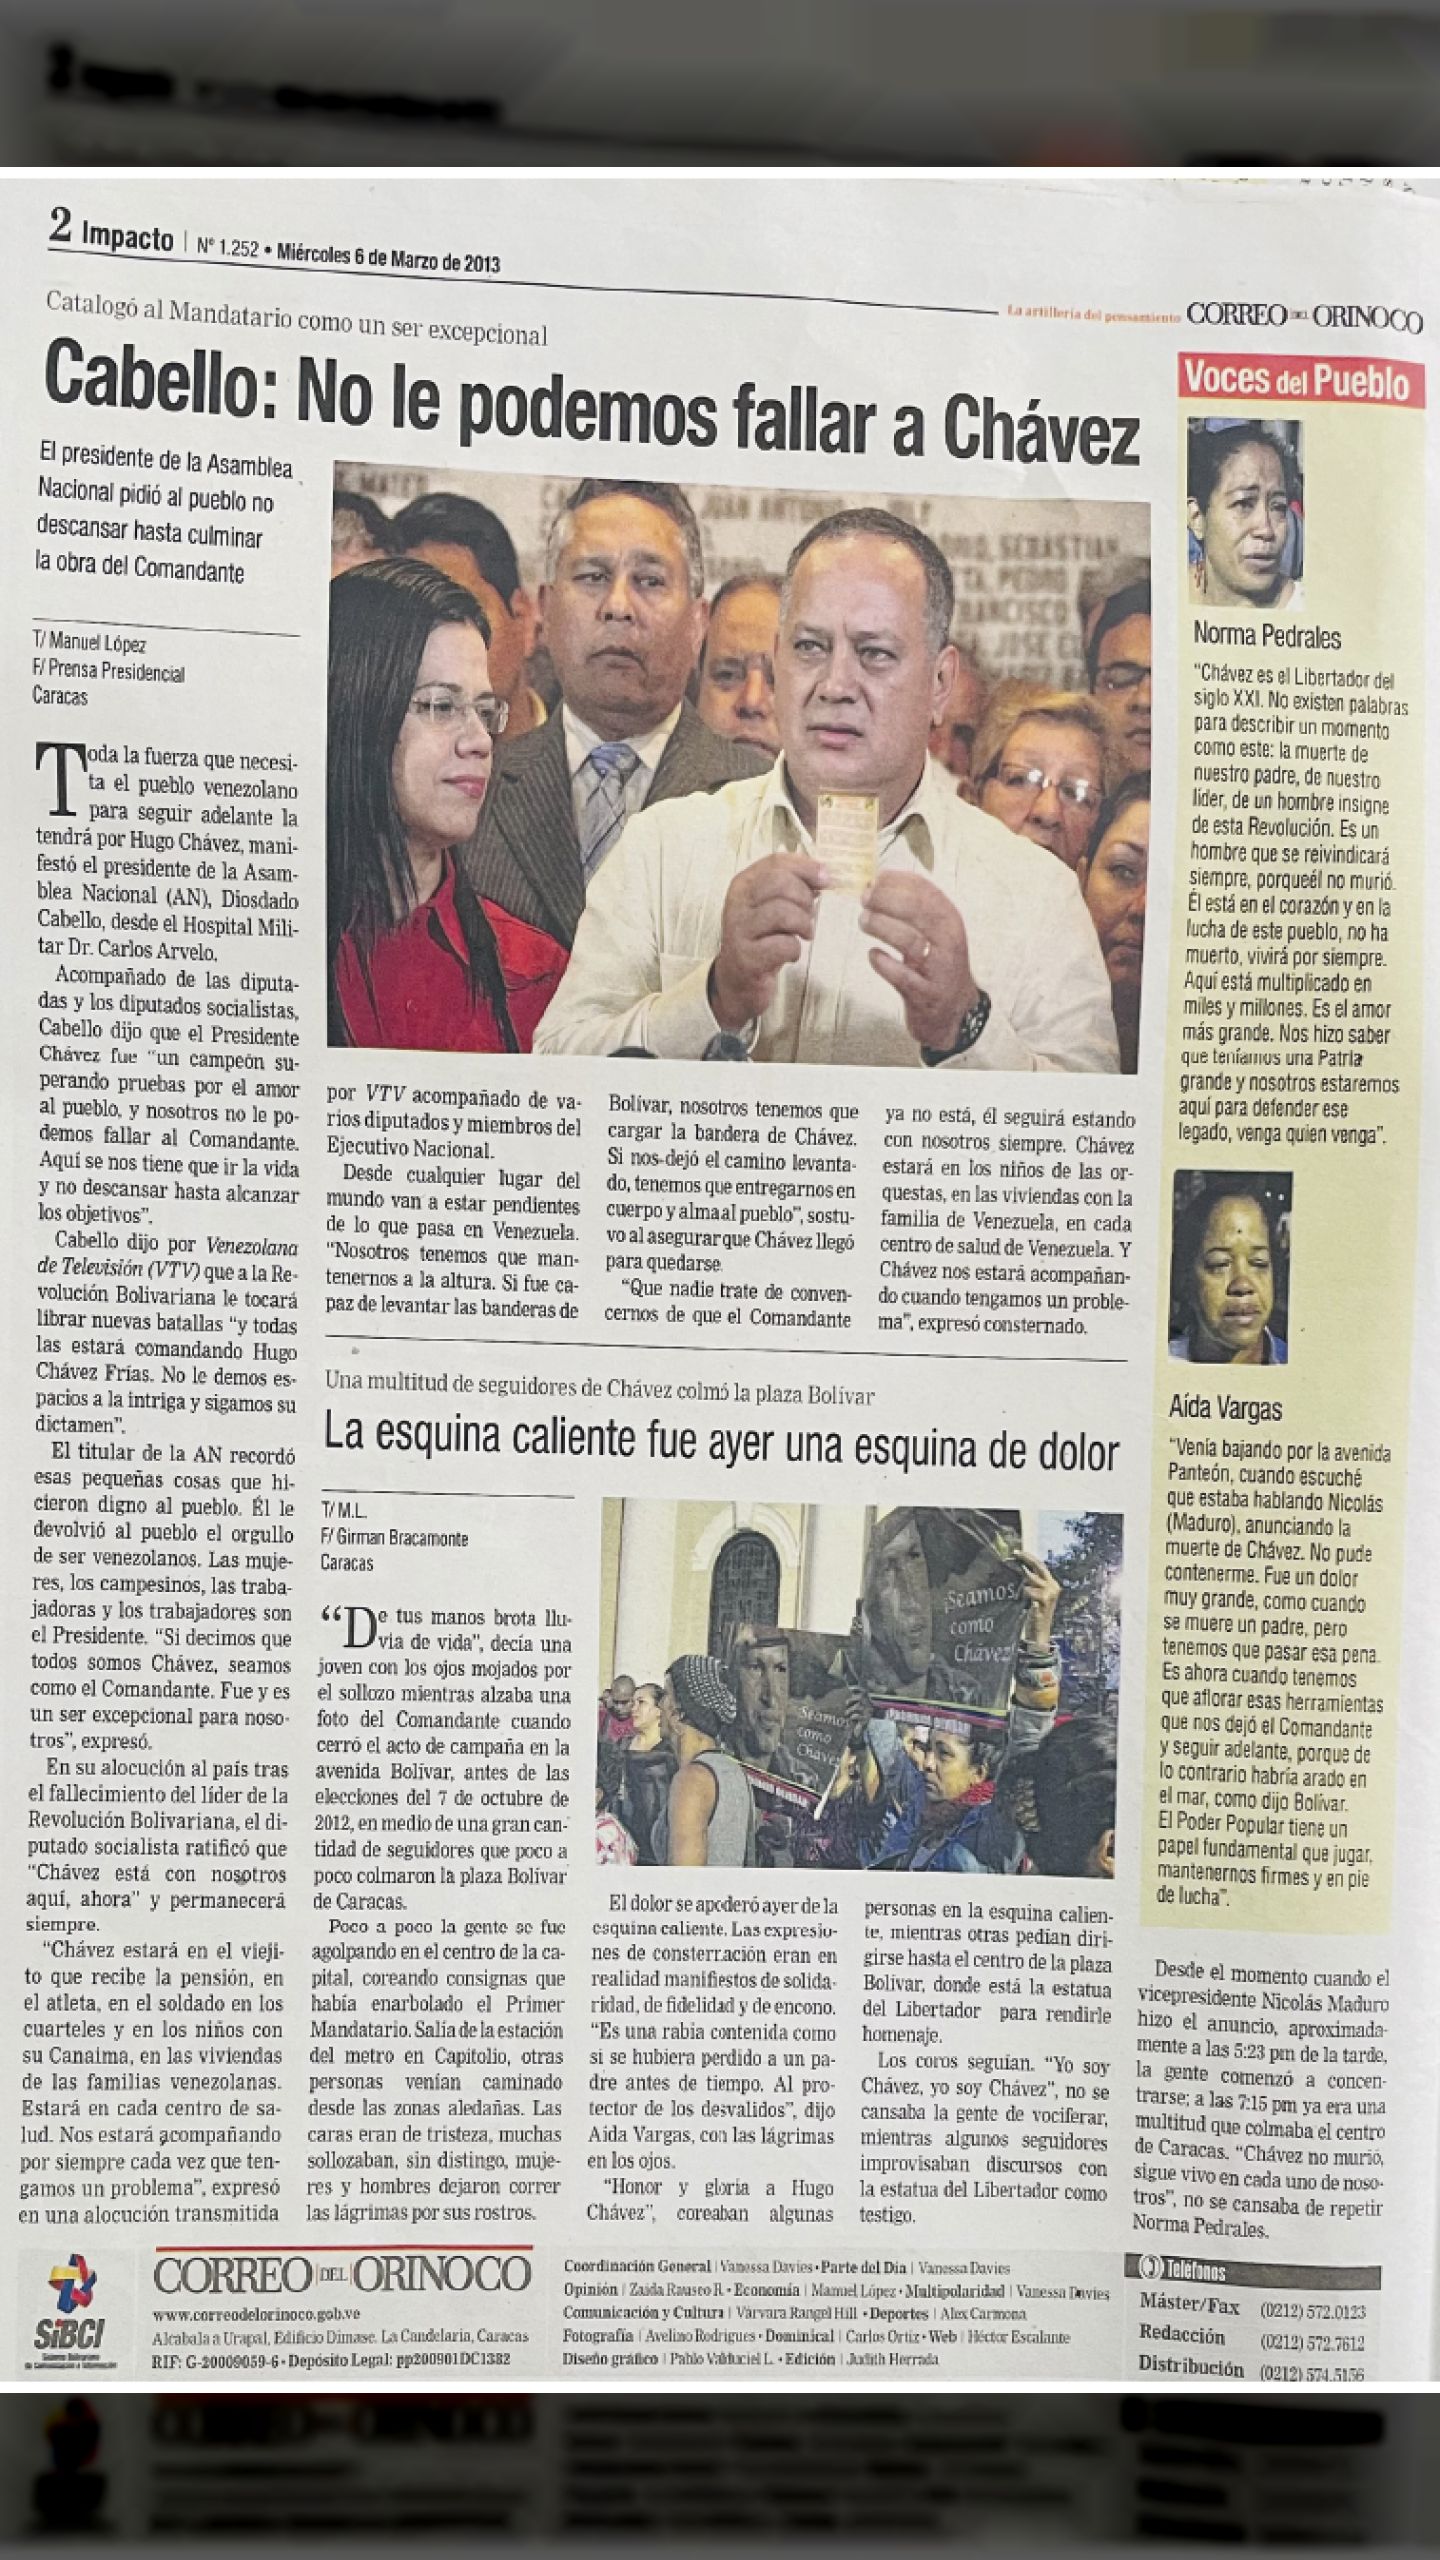 Cabello: No le podemos fallar a Chávez (CORREO DEL ORINOCO, 6 de marzo 2013)